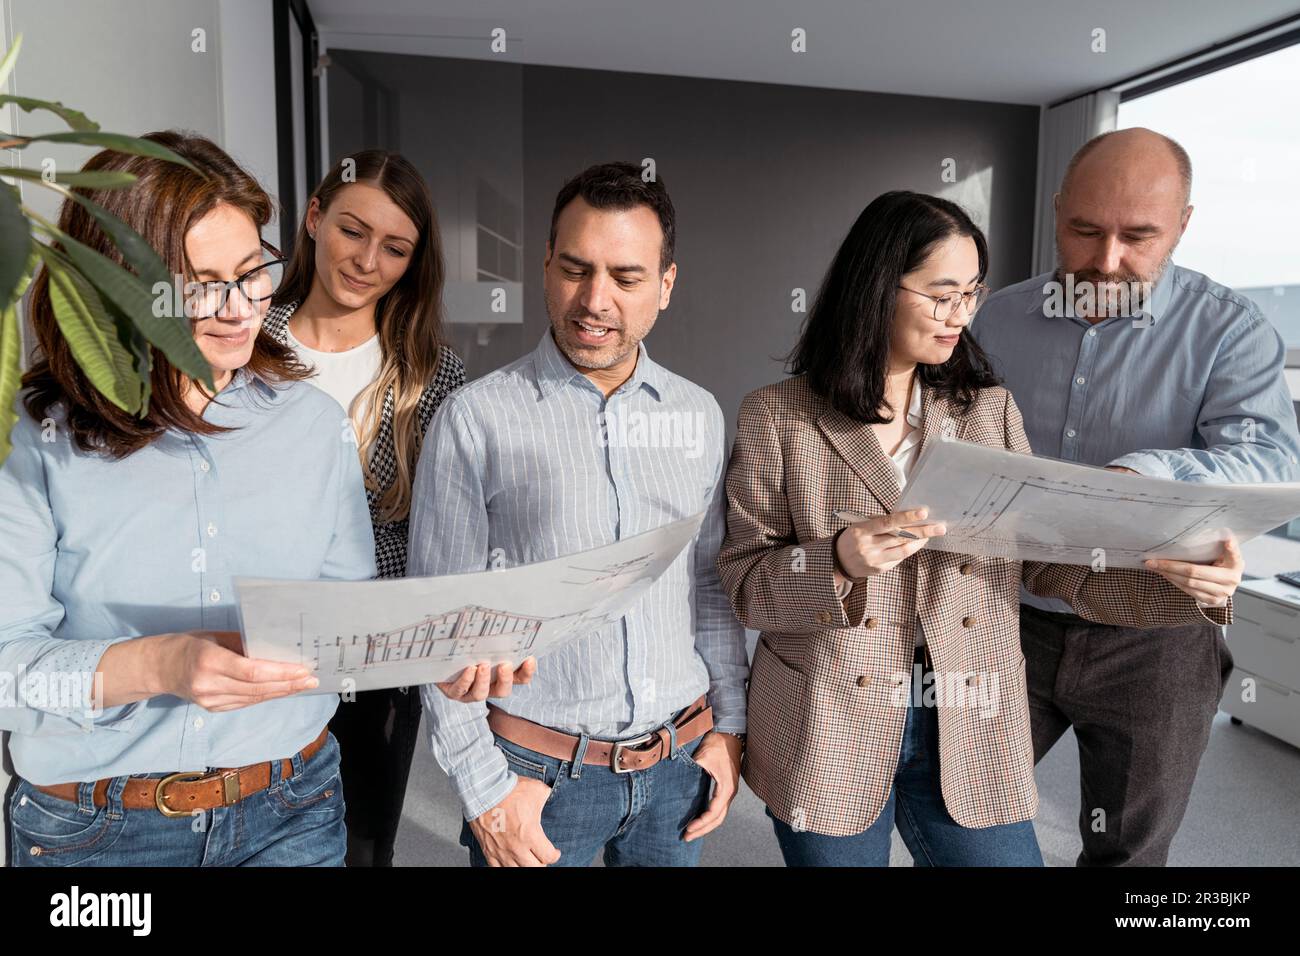 Geschäftsleute arbeiten gemeinsam an einem Architekturprojekt im Büro Stockfoto